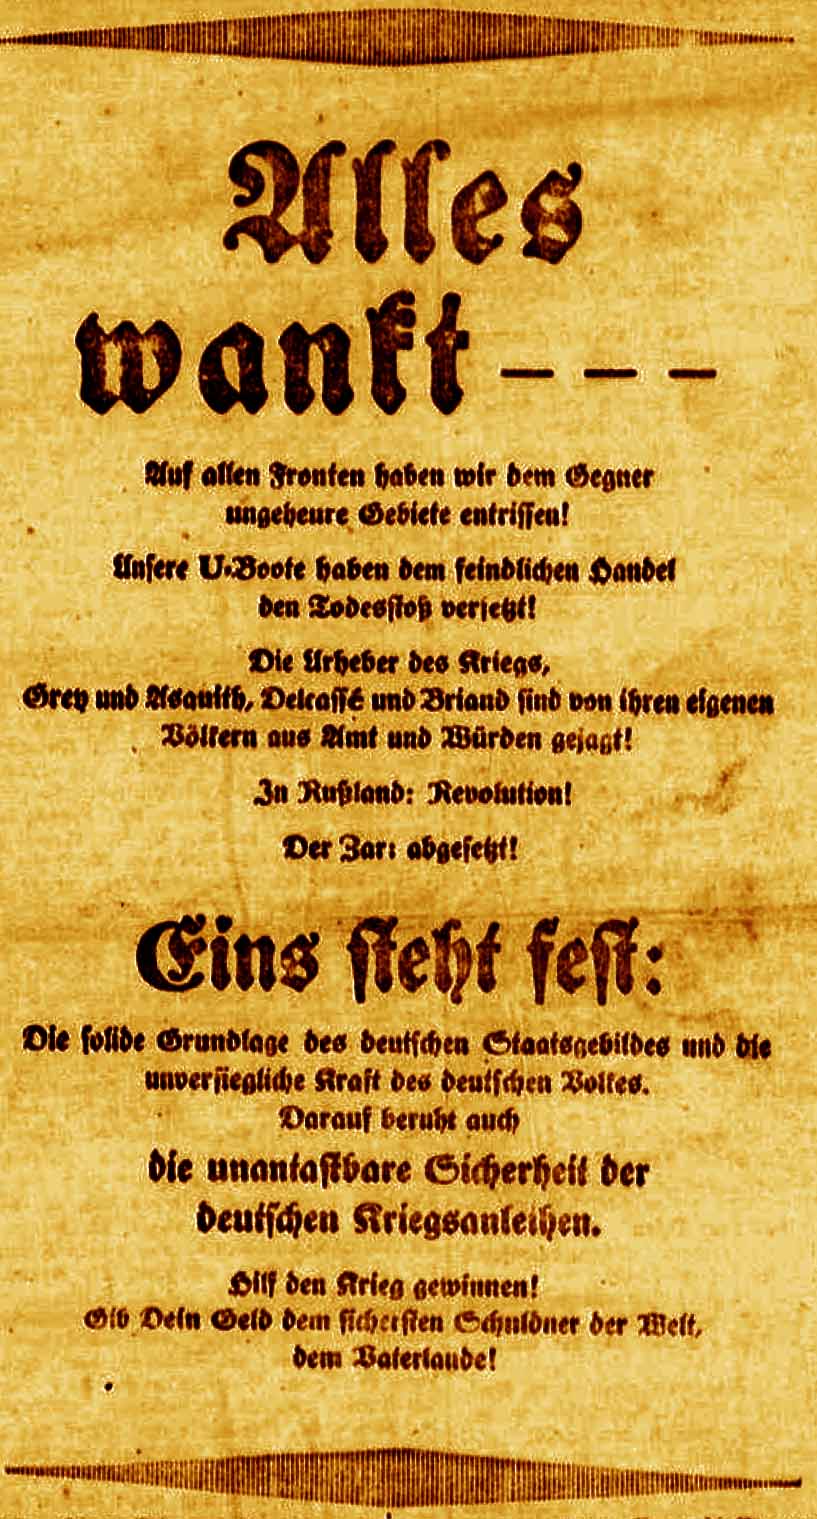 Anzeige in der Deutschen Reichs-Zeitung und in der Bonner Zeitung am 28. März 1917